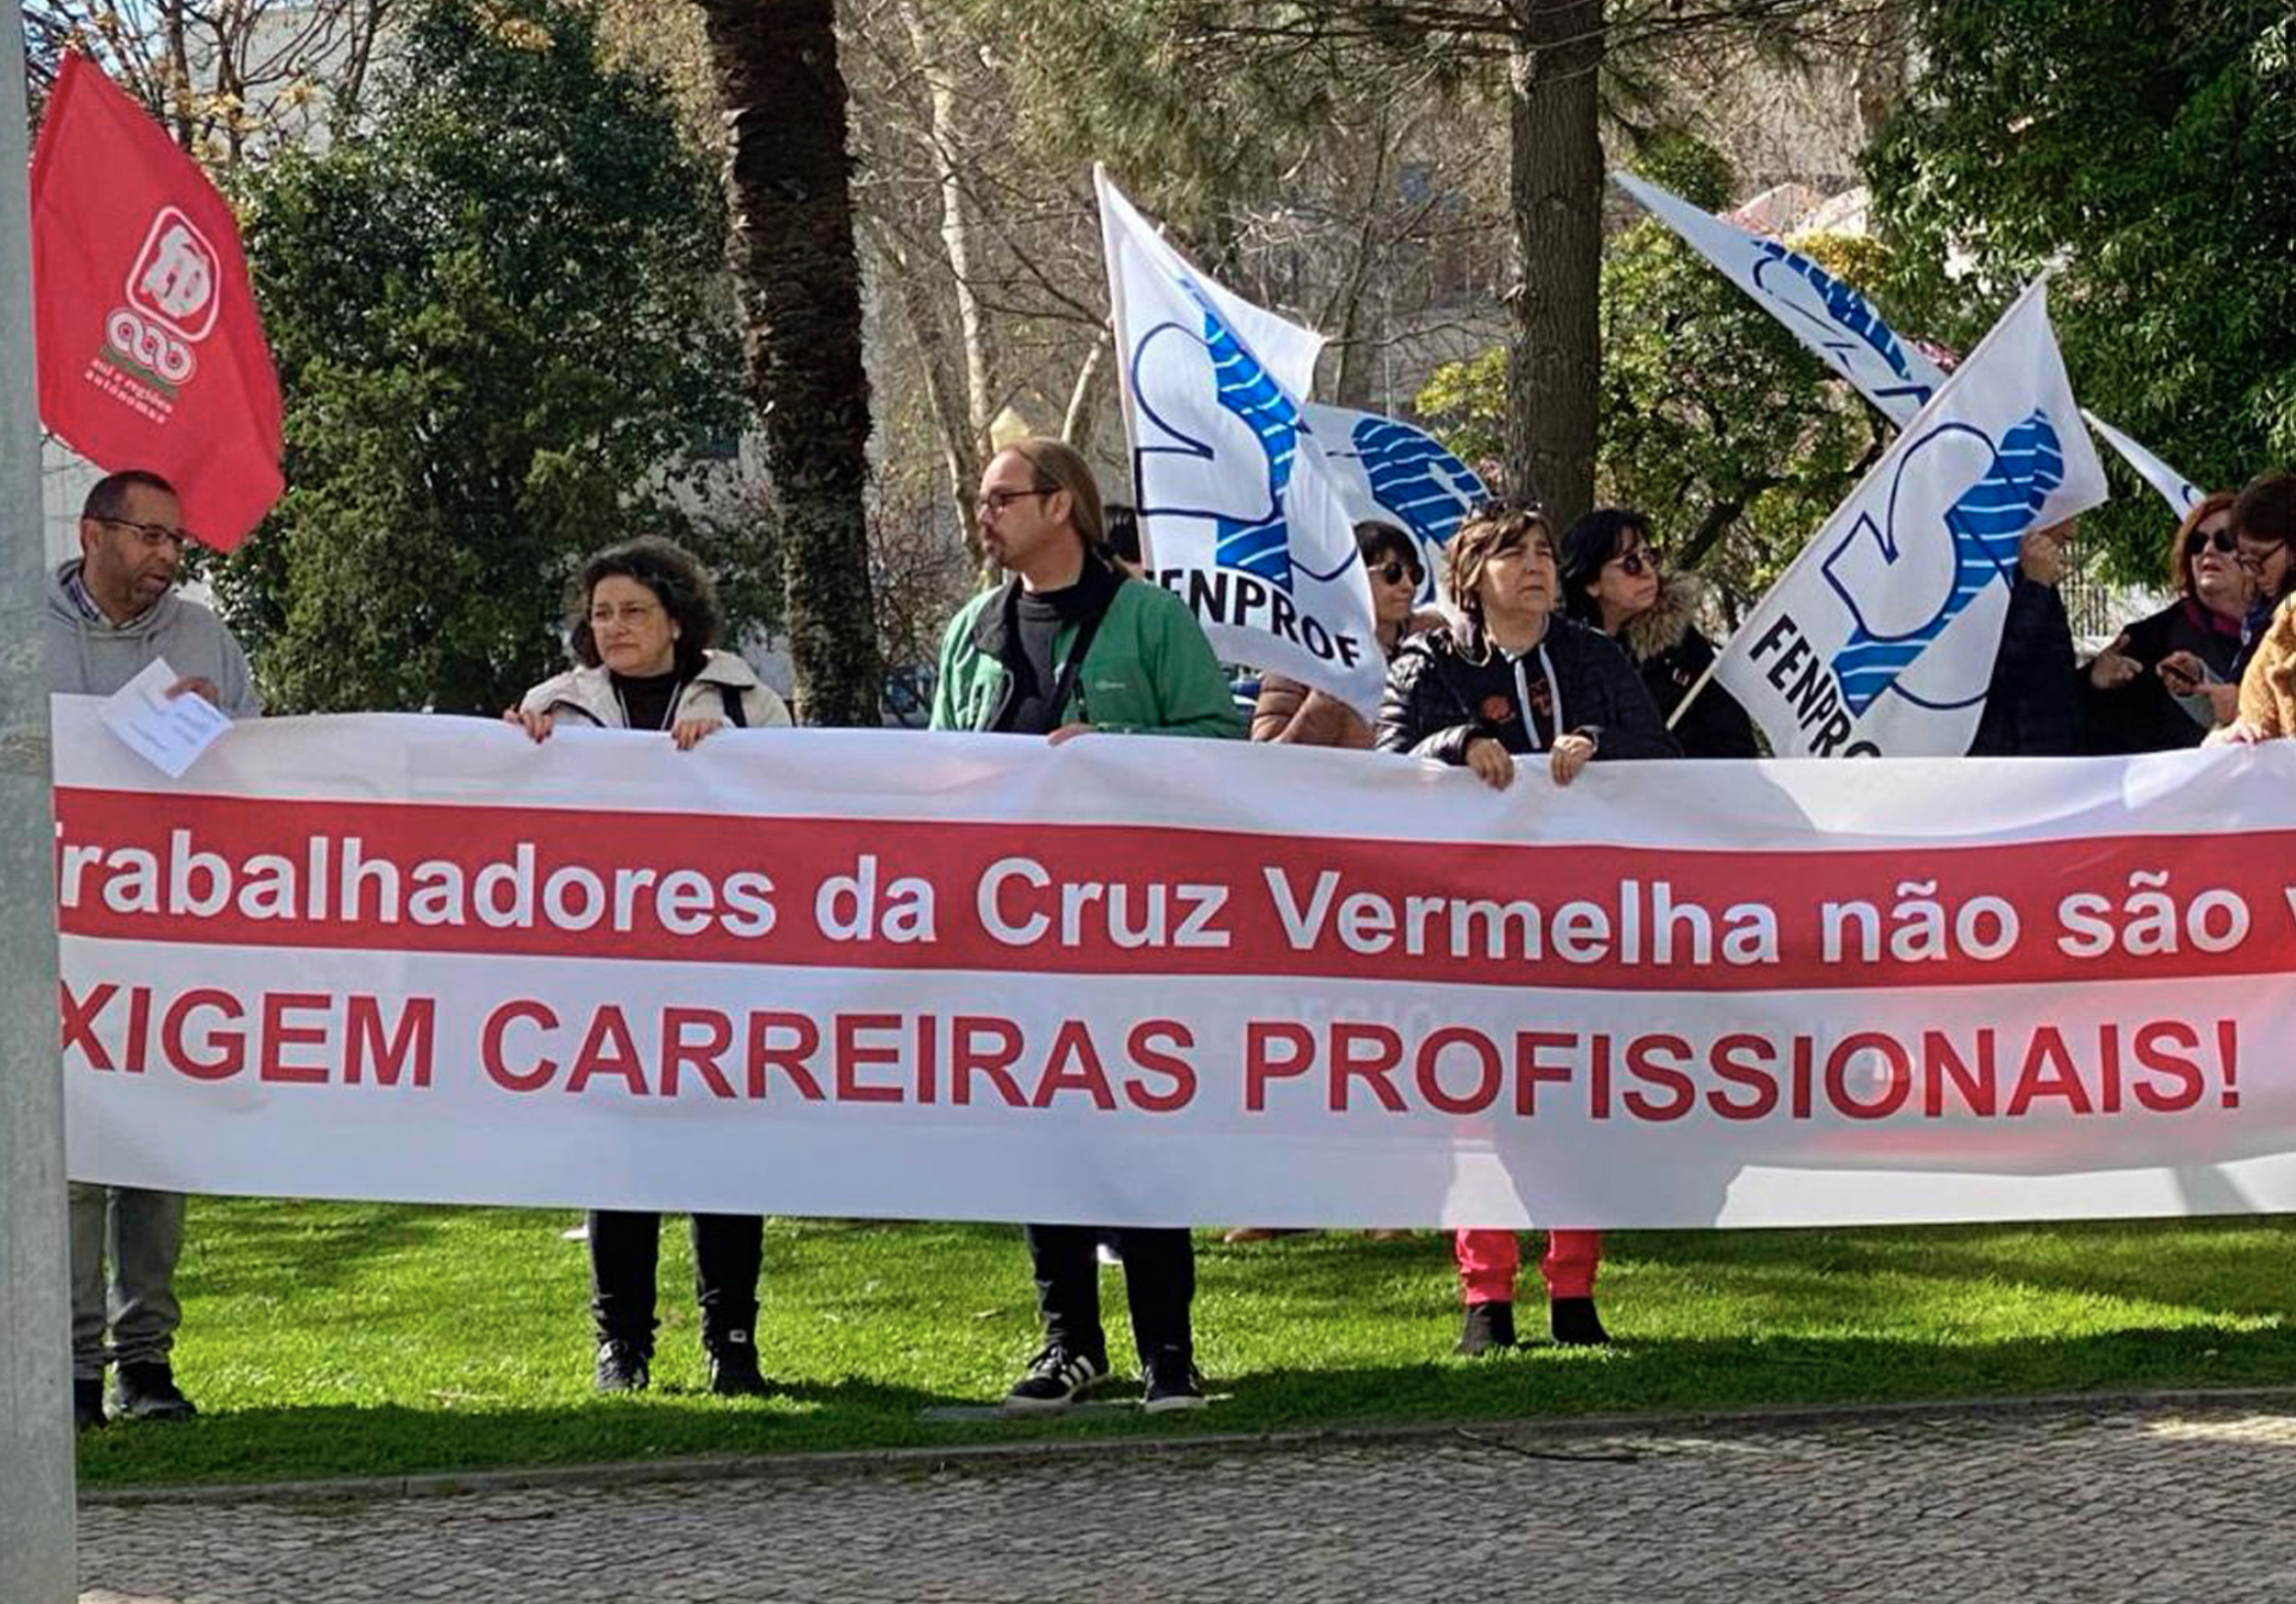 Trabalhadores da Cruz Vermelha Portuguesa em luta por melhores condições de trabalho!